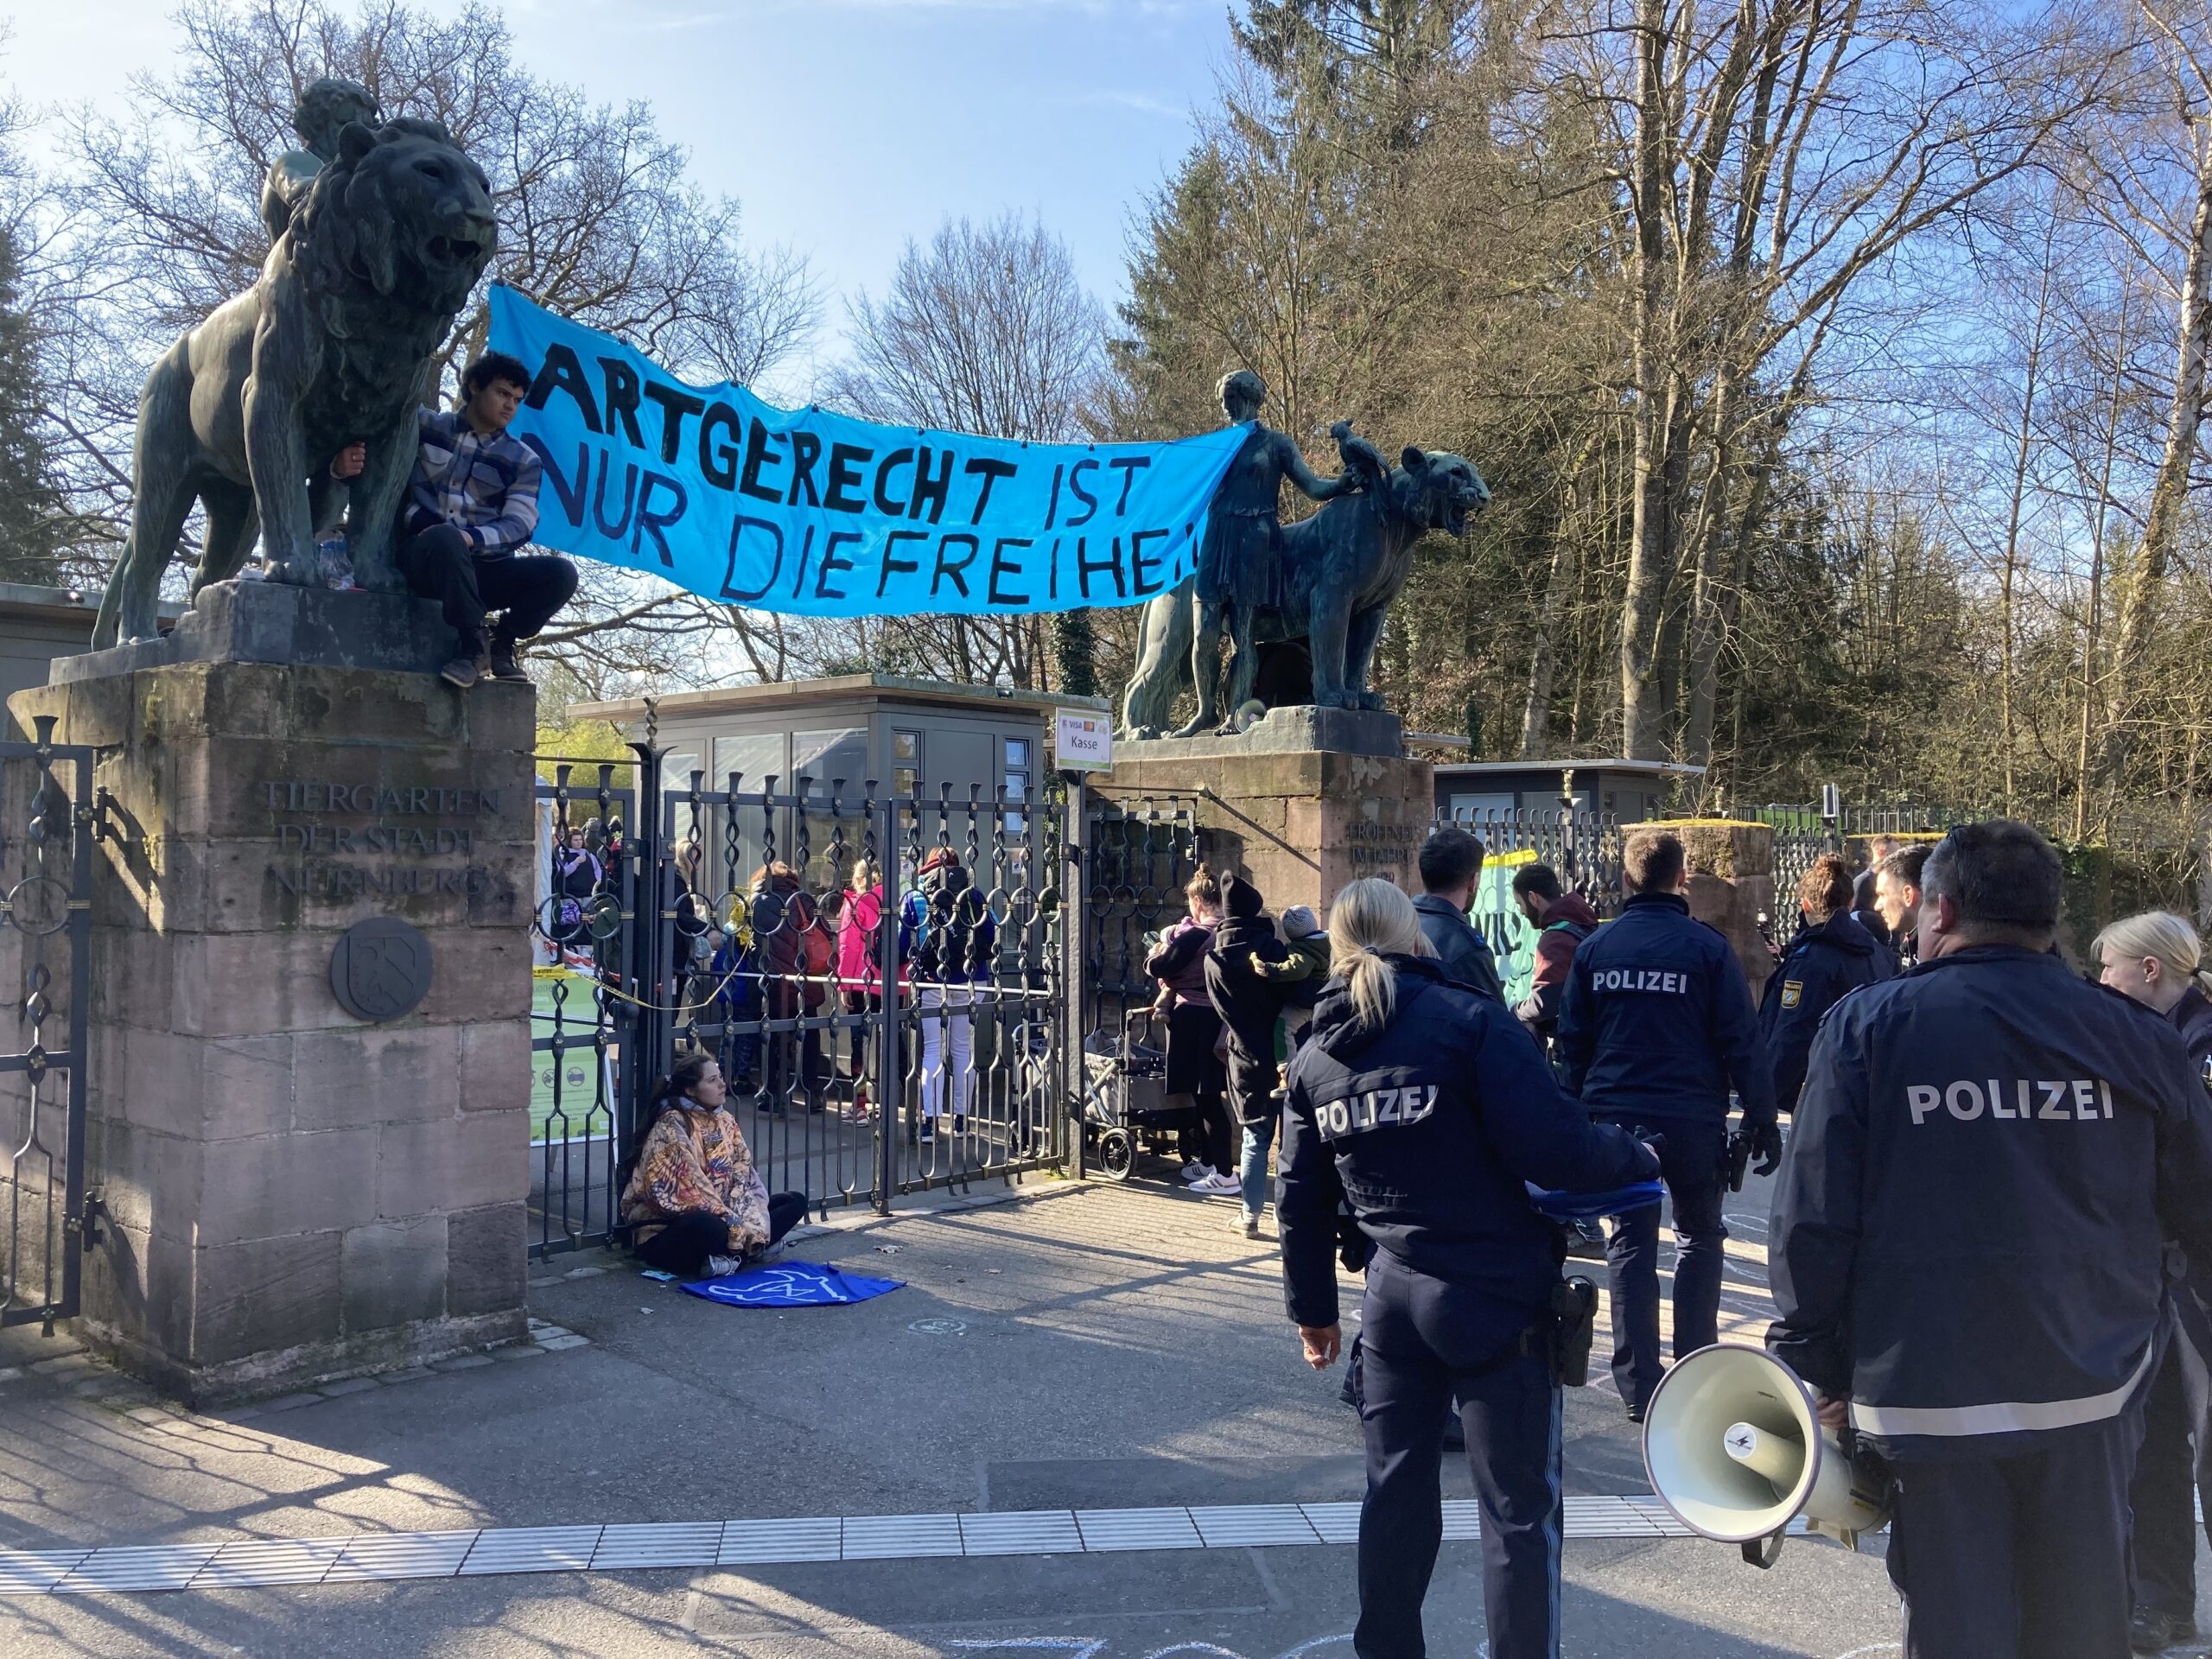 Aktivisten sitzen mit einem Plakat "Artgerecht ist nur die Freiheit" vor dem Eingang des Nürnberger Zoos